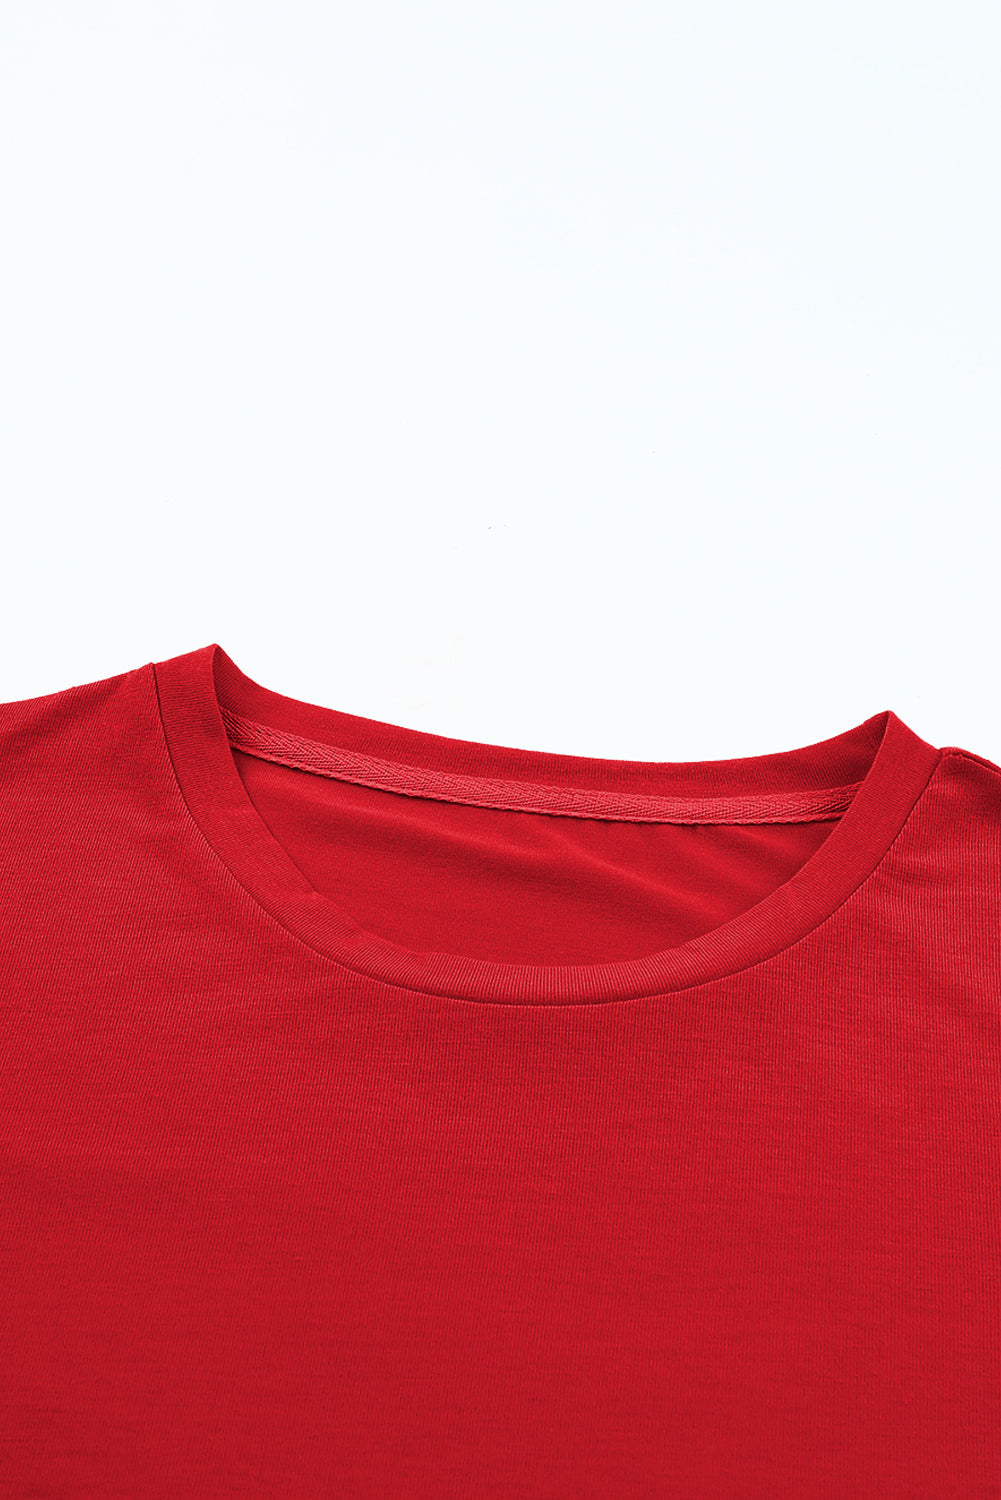 T-shirt décontracté uni à col rond rose rouge